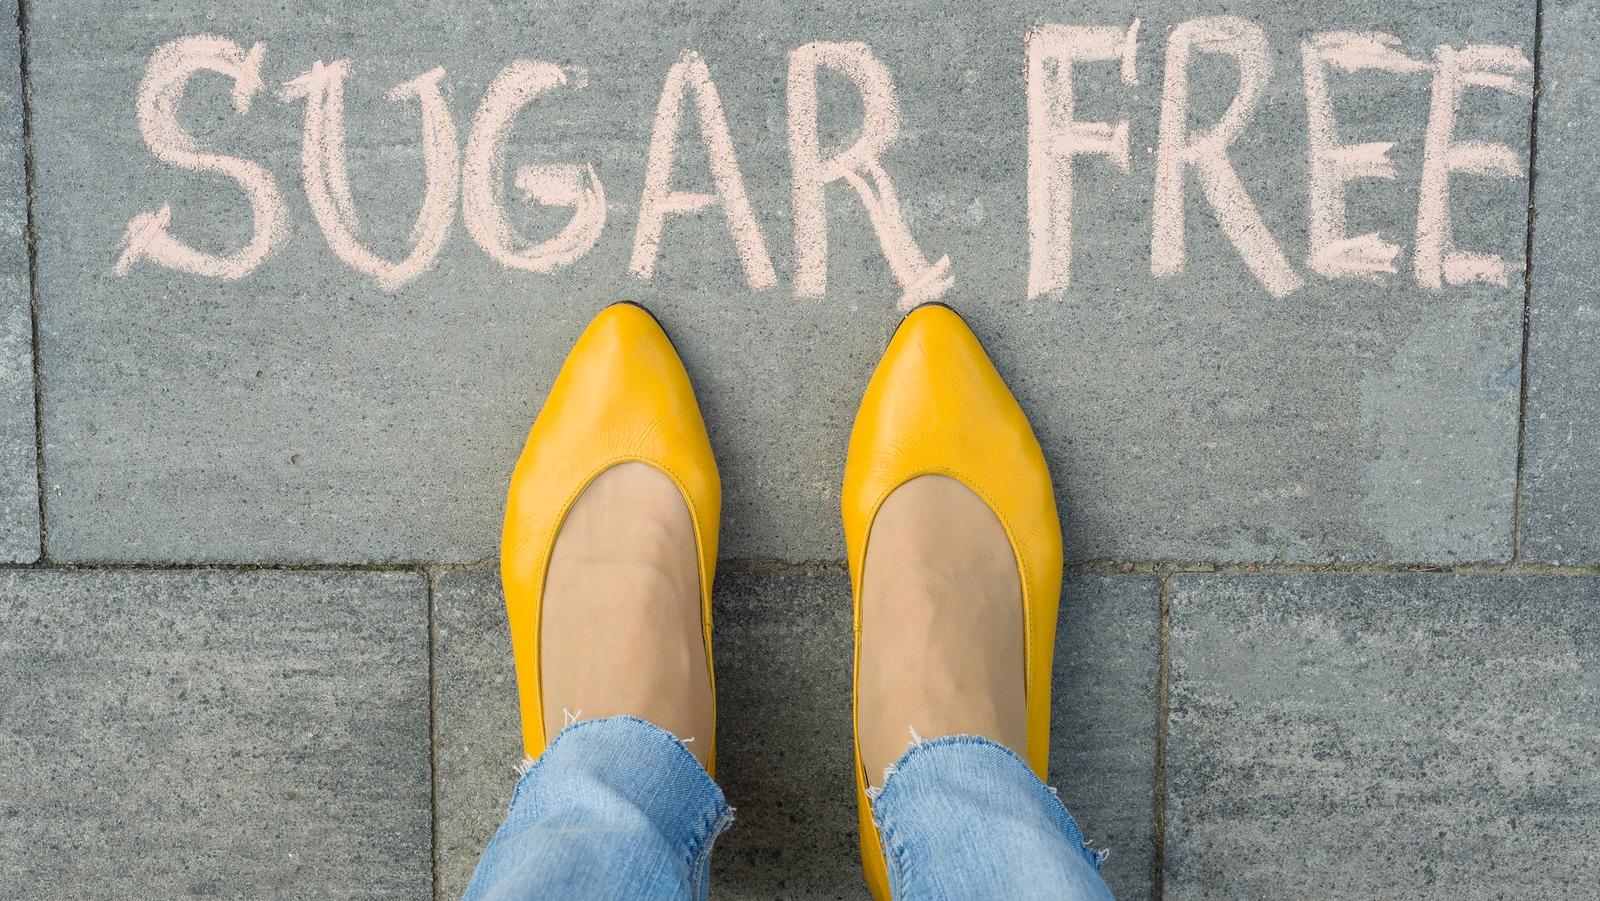 Cukormentes étkezés - Kezdjen el cukor nélkül élni!